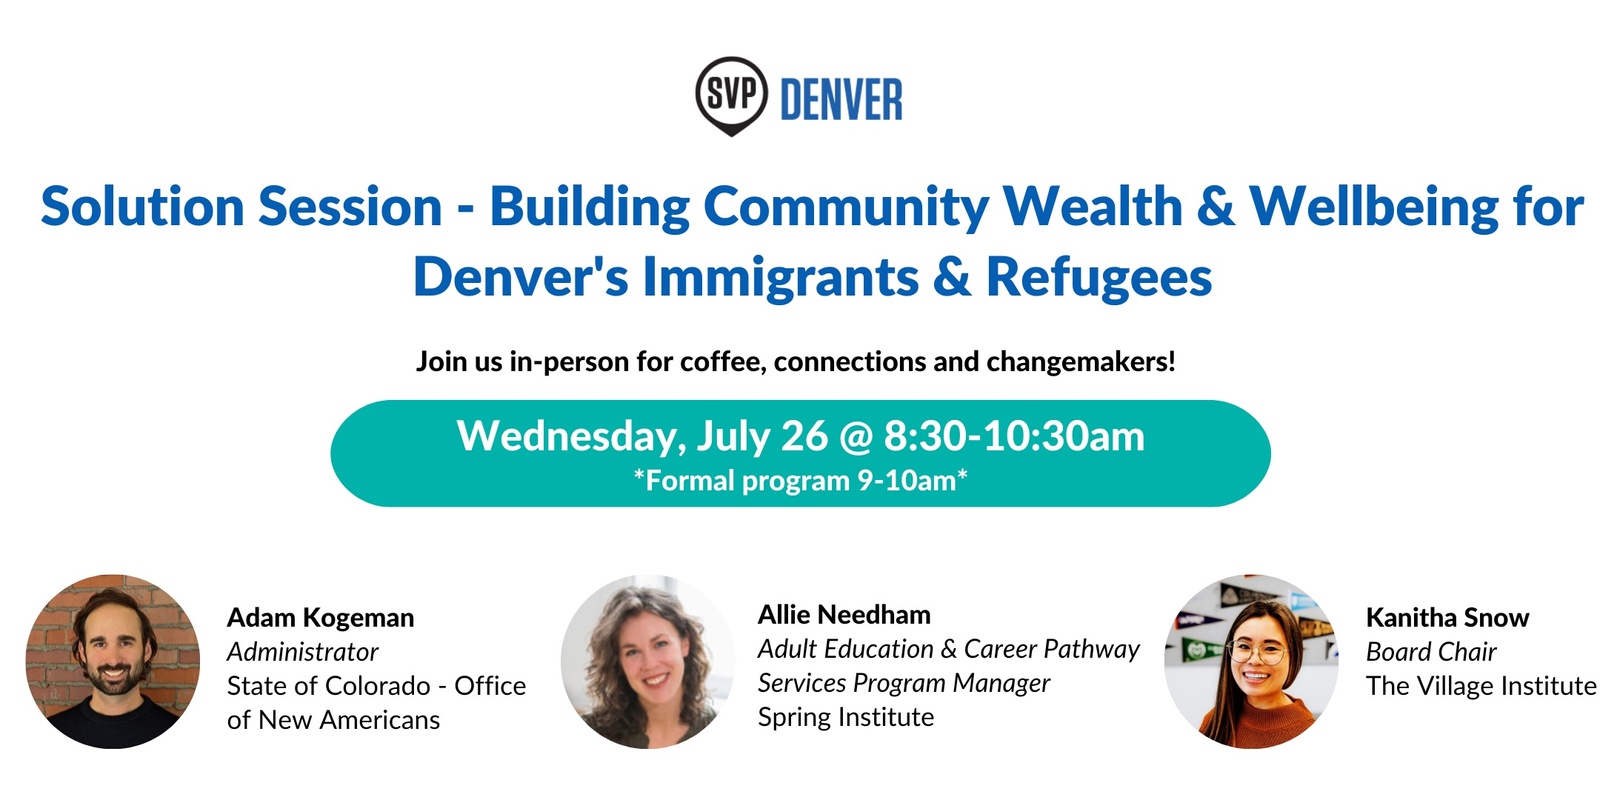 Banner image for SVP Denver Solution Session: Building Community Wealth & Wellbeing for Denver's Immigrants & Refugees